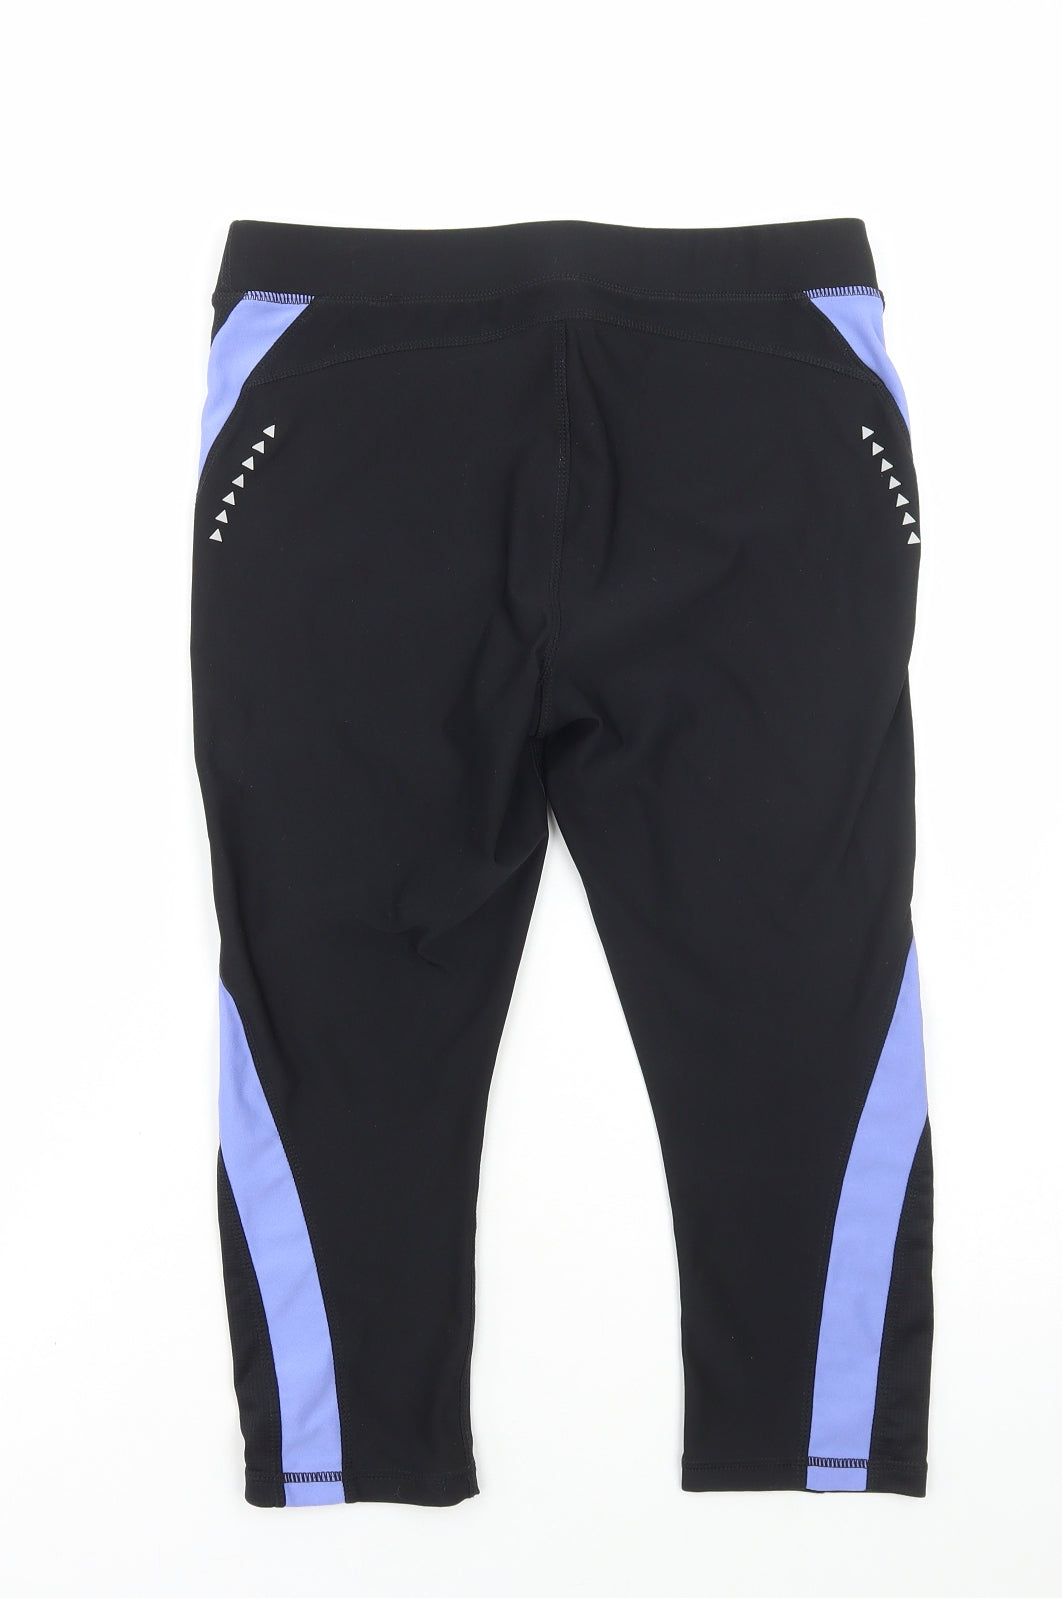 Athletic Works Womens Black Polyester Capri Leggings Size 8 L19 in Regular